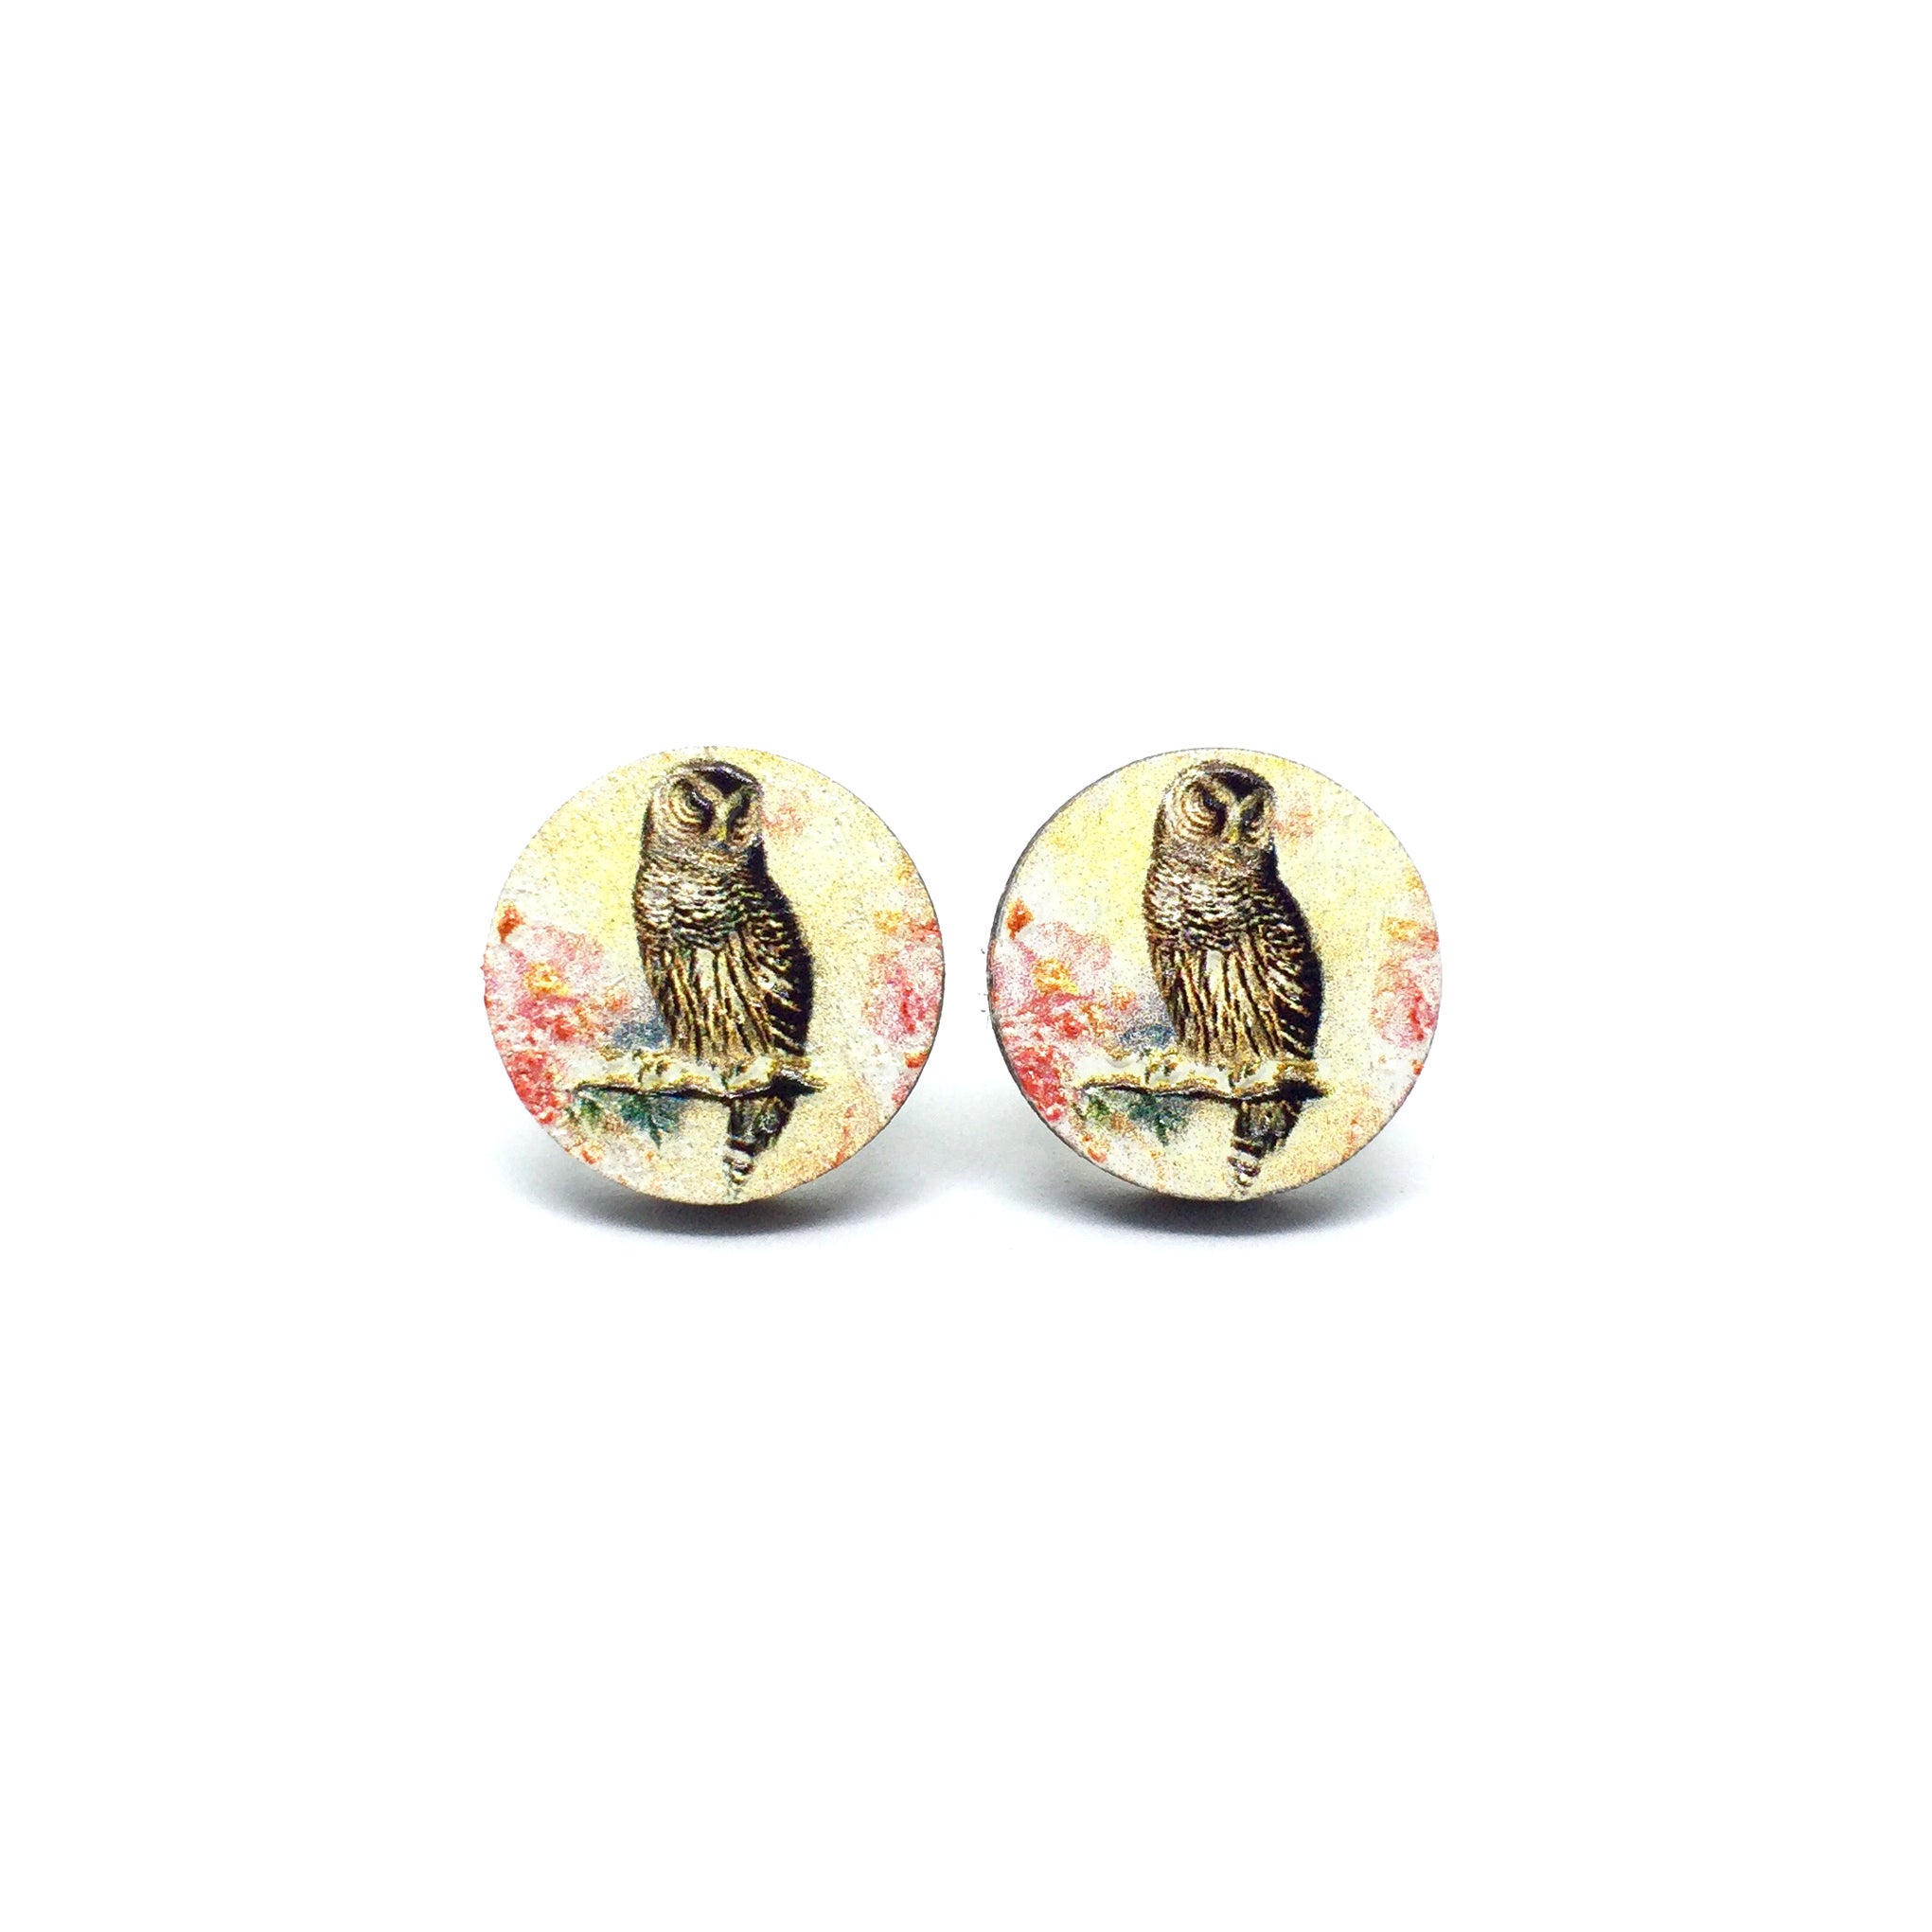 Vintage Owl Wooden Earrings